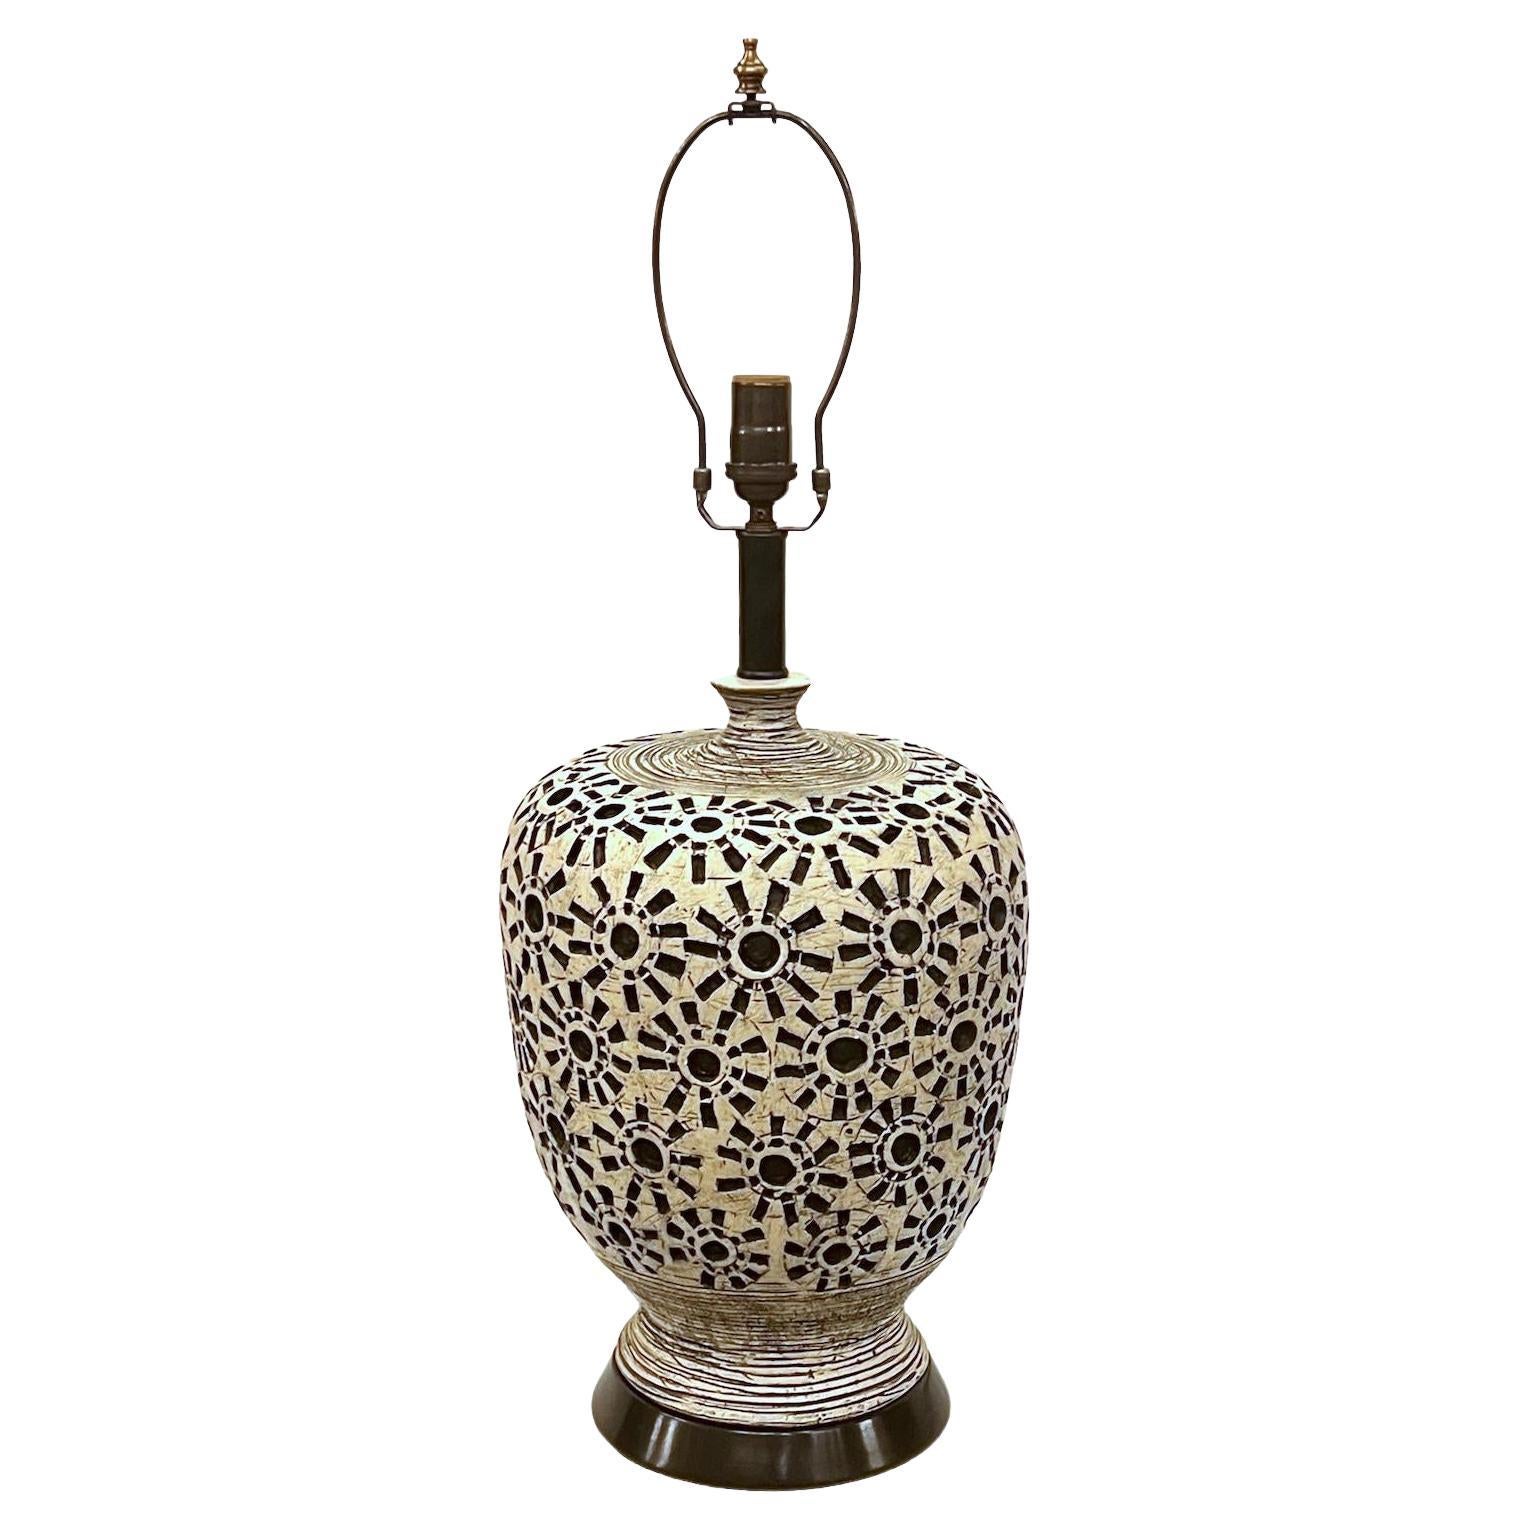 Midcentury Italian Ceramic Lamp